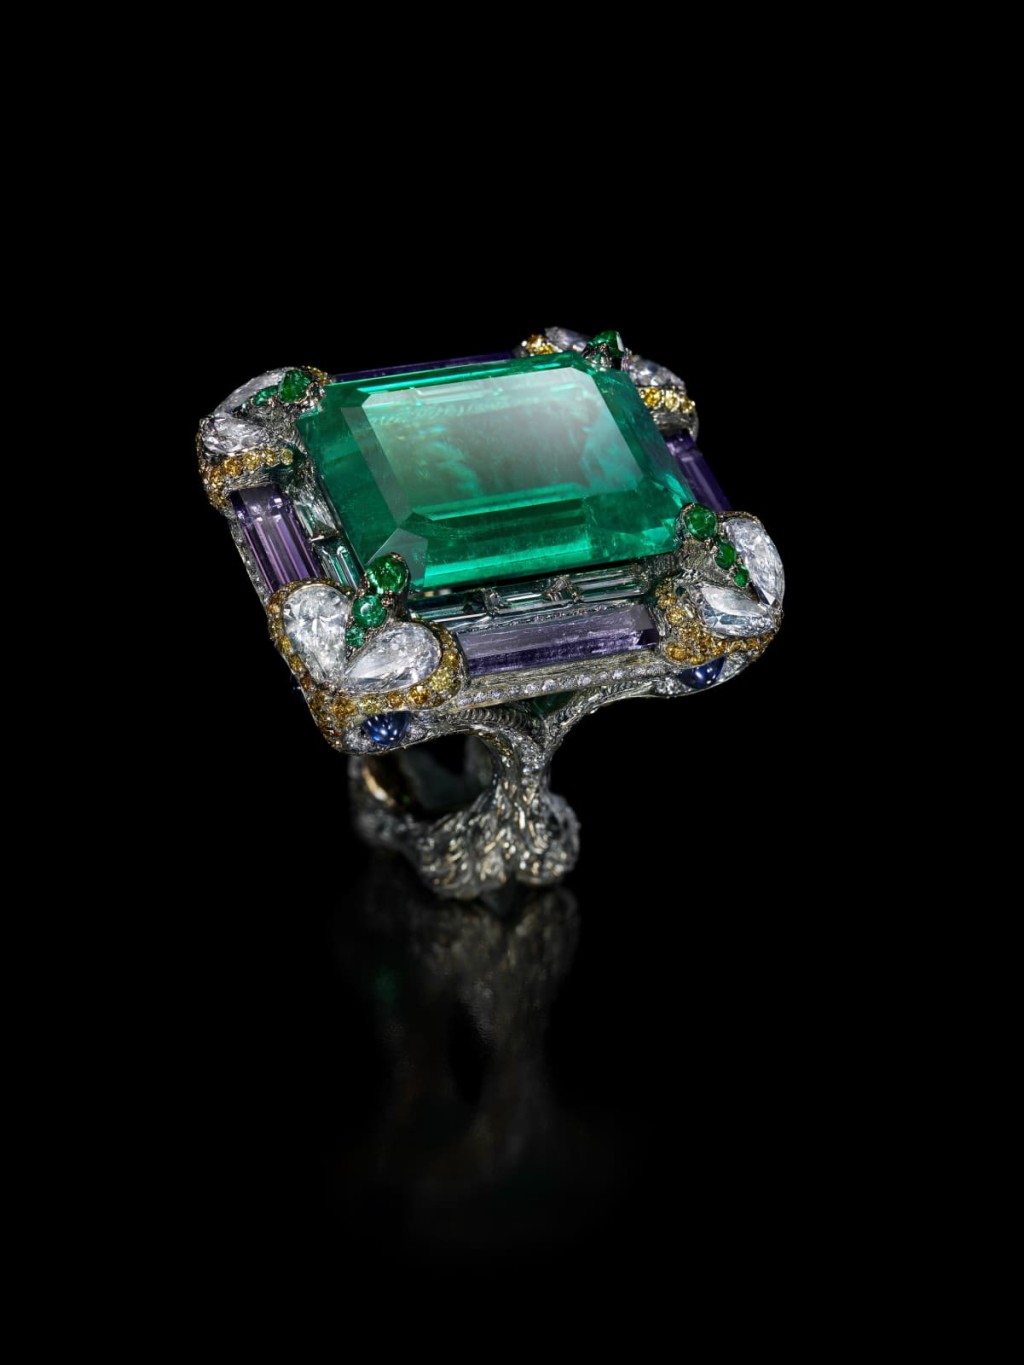 2012年《湖中鏡》套裝中的指環祖母綠主石為25.22卡，風格近似20世紀初期流行於法國的裝飾藝術，對稱調和的線條展現高貴美感（圖片來源: Wallace Chan官網）。